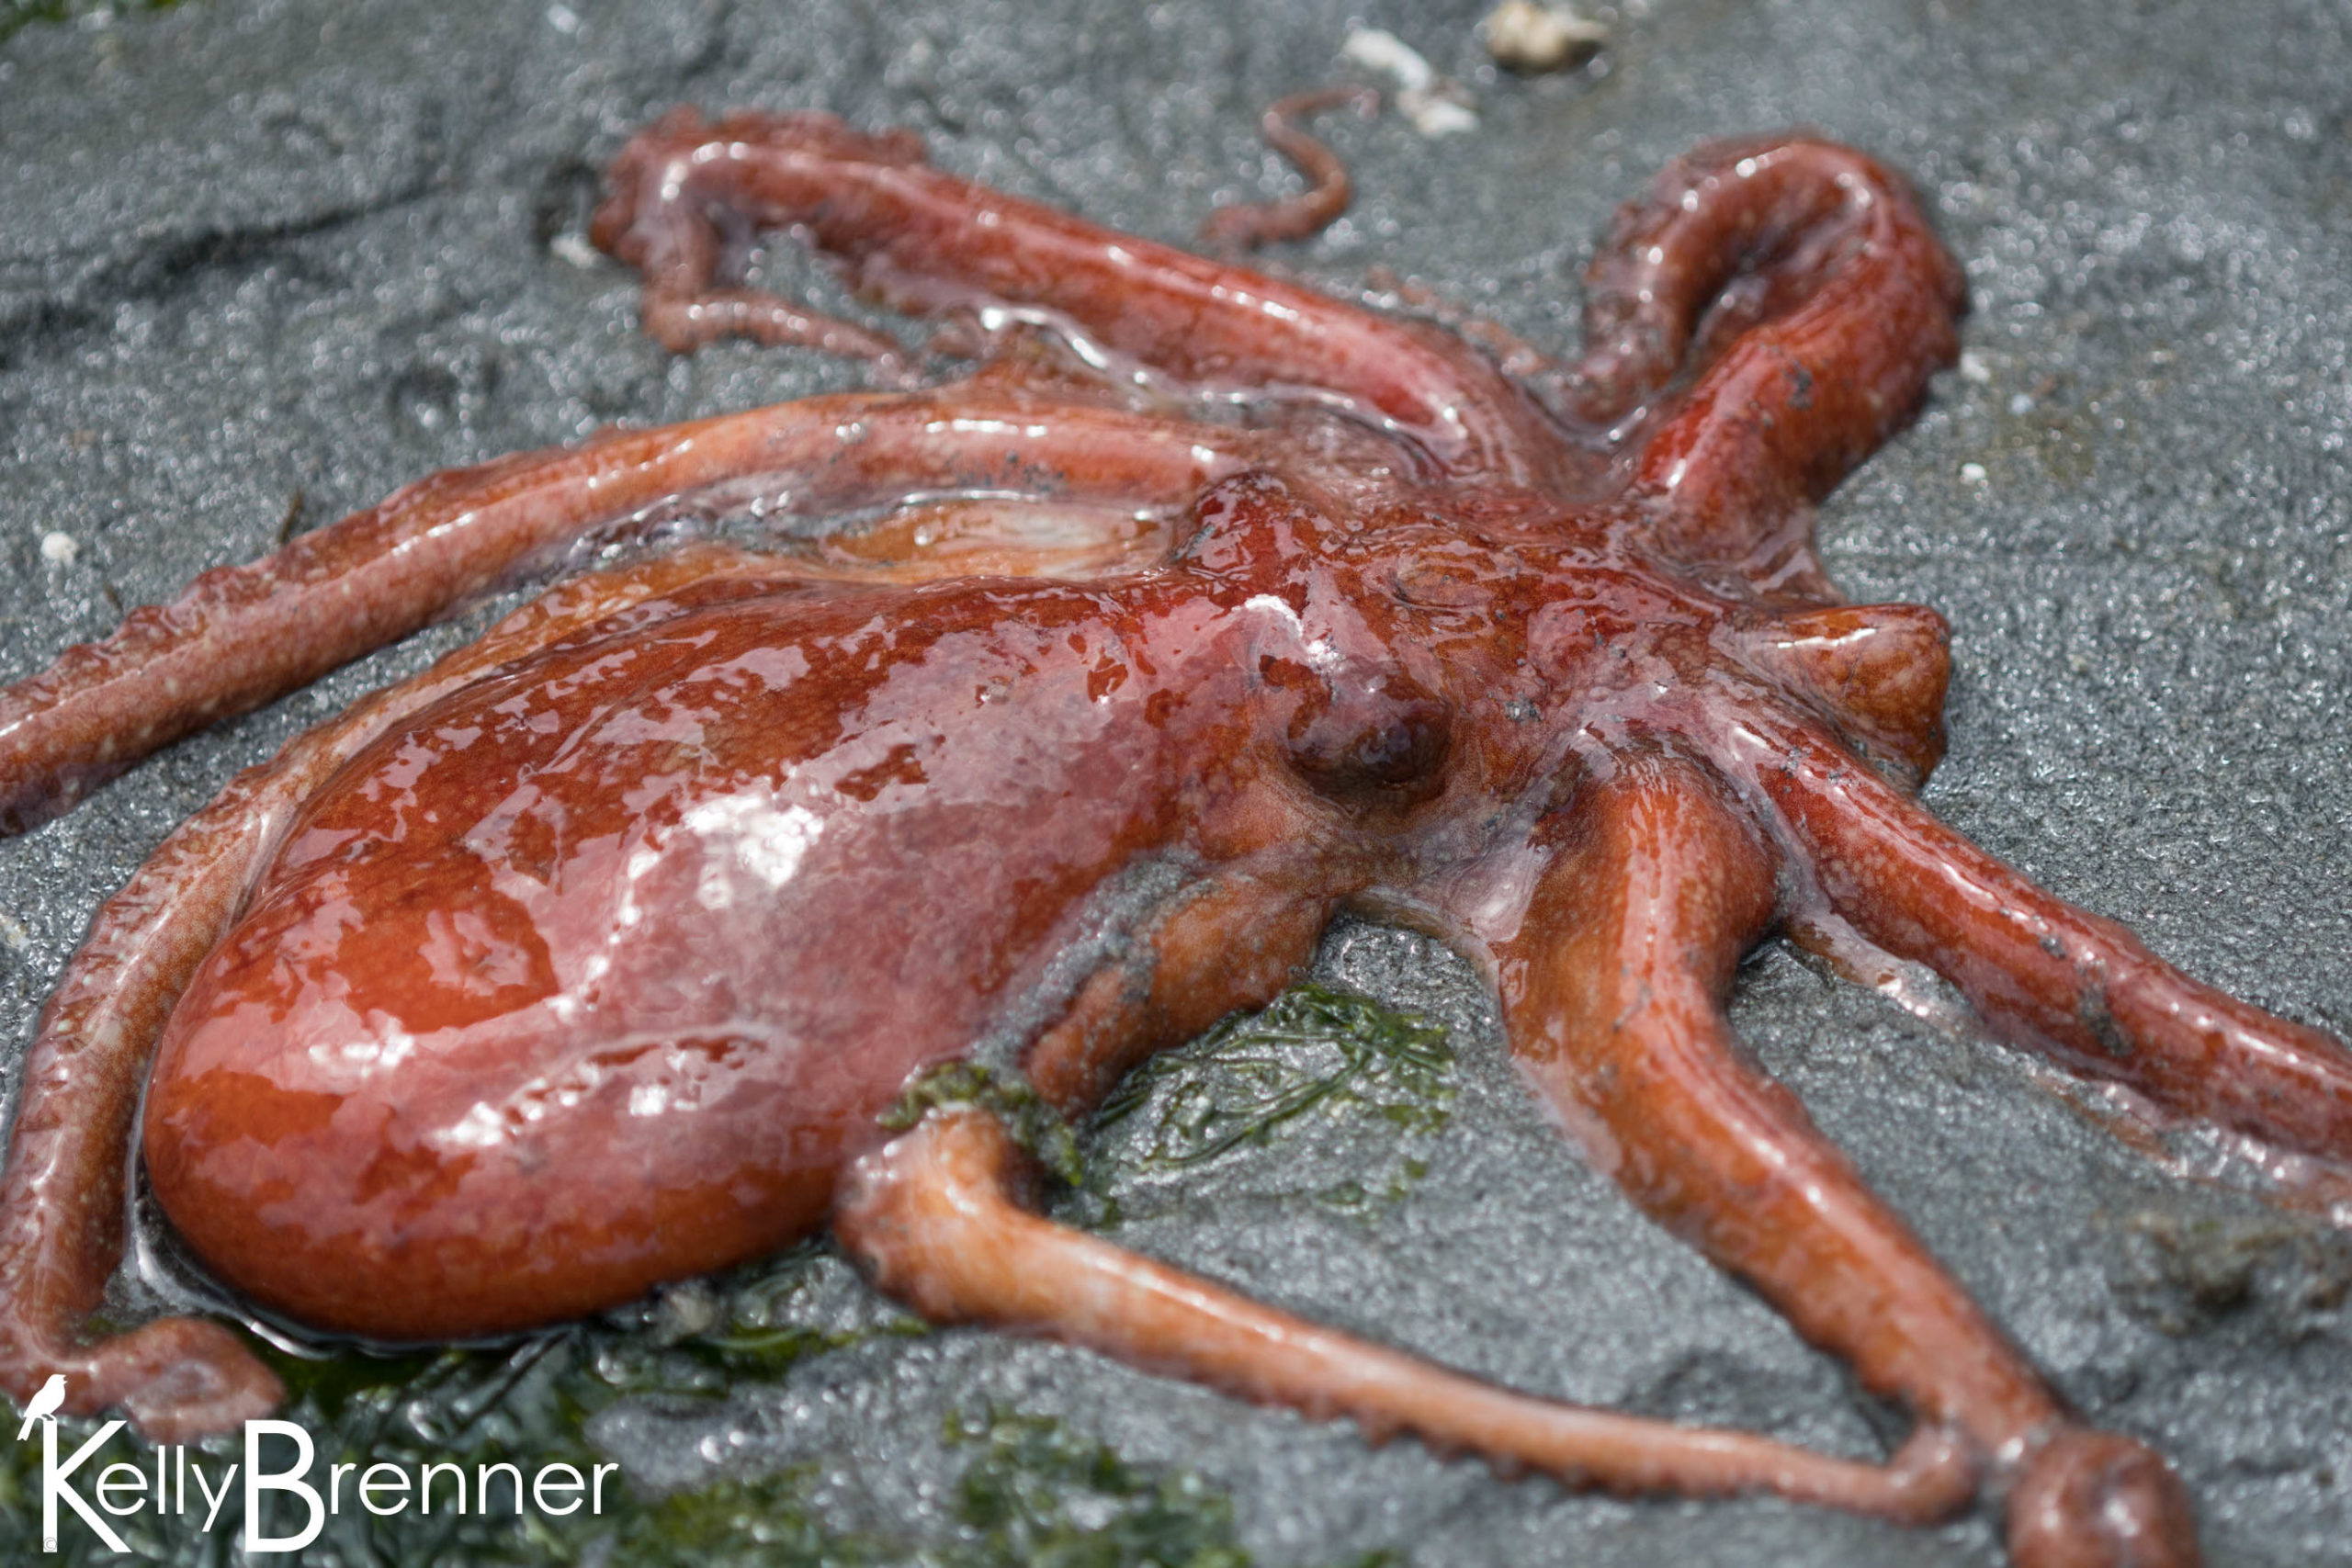 Field Journal: Alki Octopus